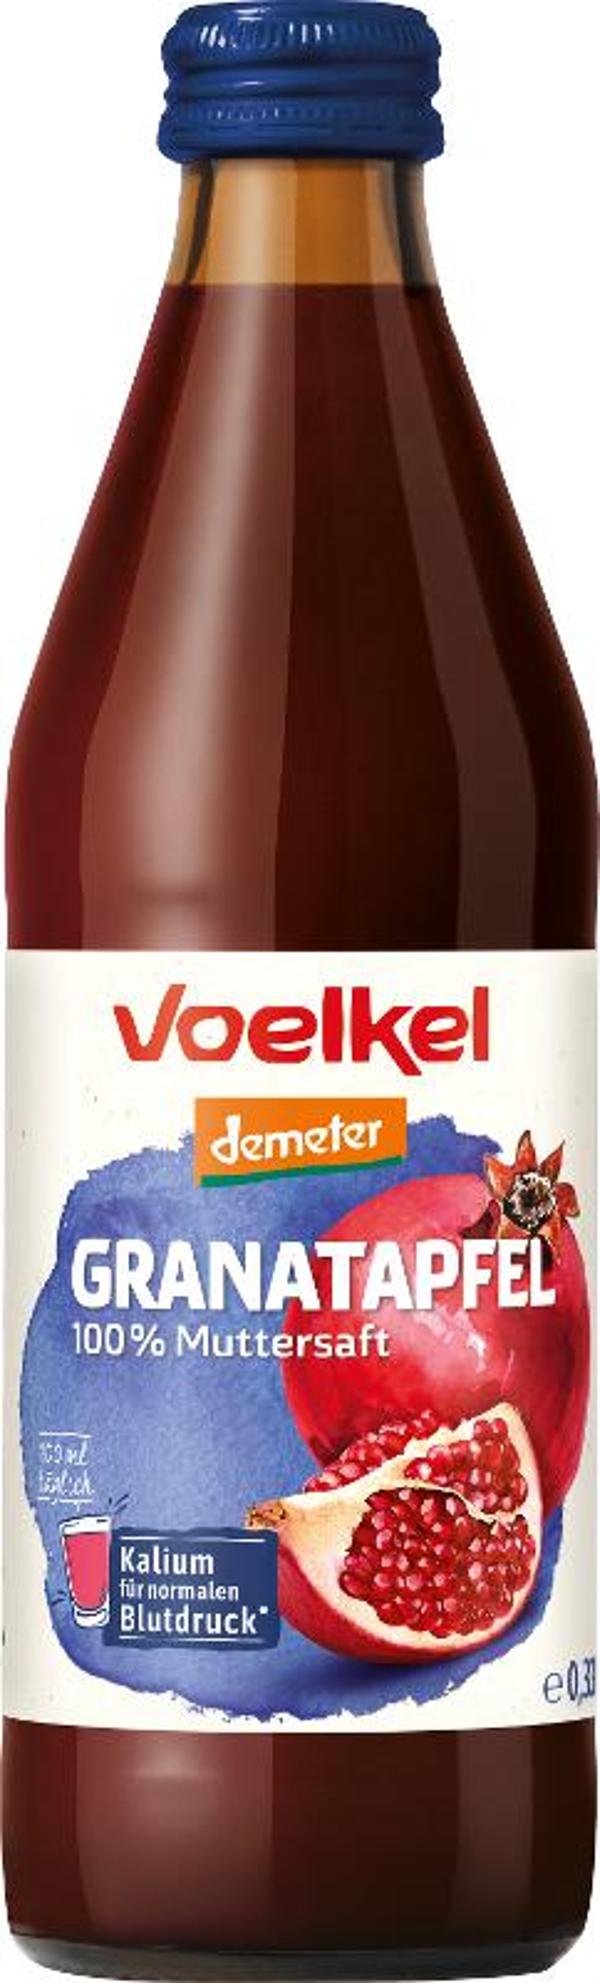 Produktfoto zu Granatapfel Muttersaft